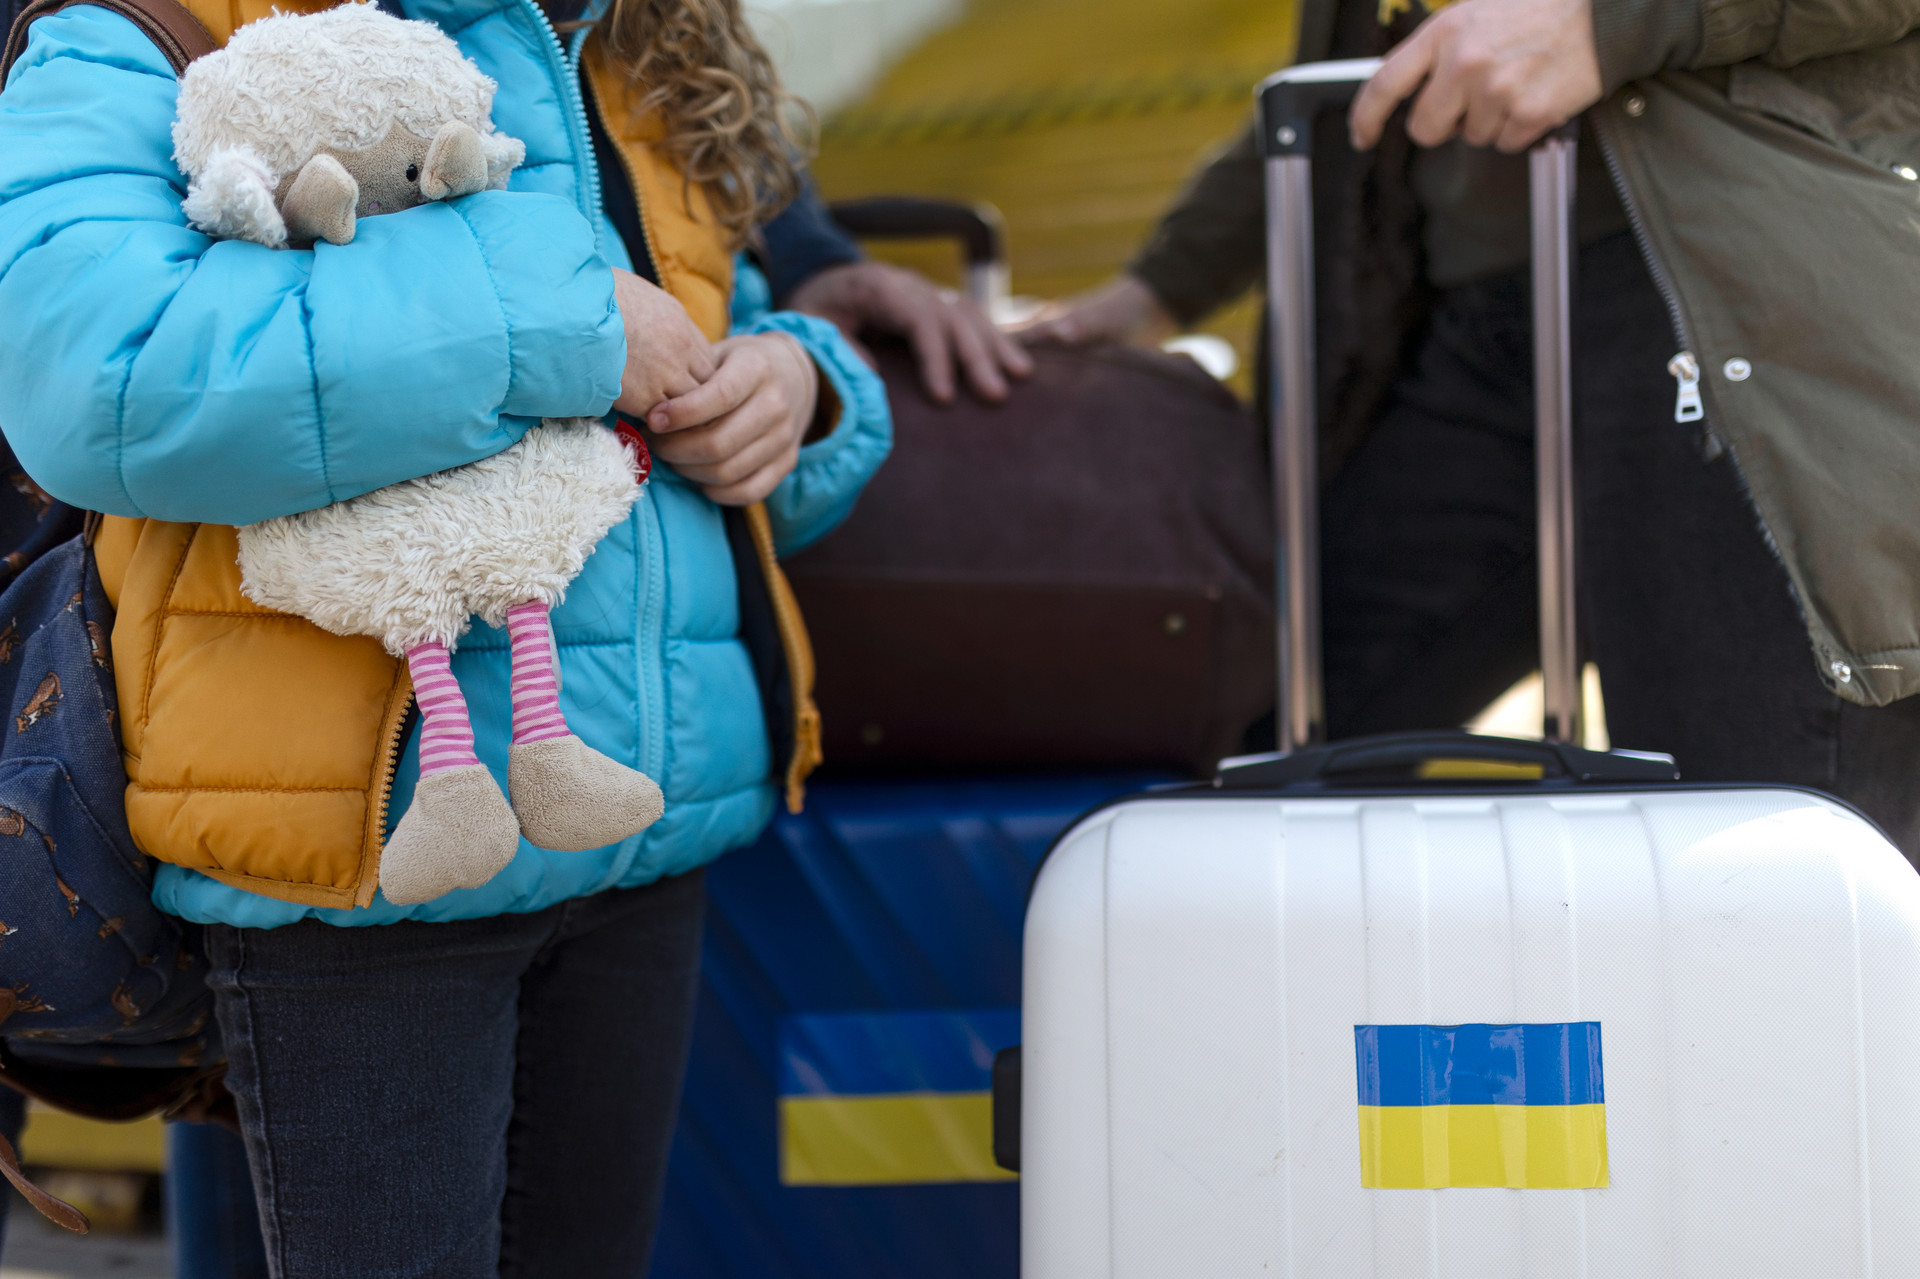 Ukrainische Flüchtlinge stehen mit Gepäck am Bahnhof. Das Mädchen hält ein Stofftier in der Hand.